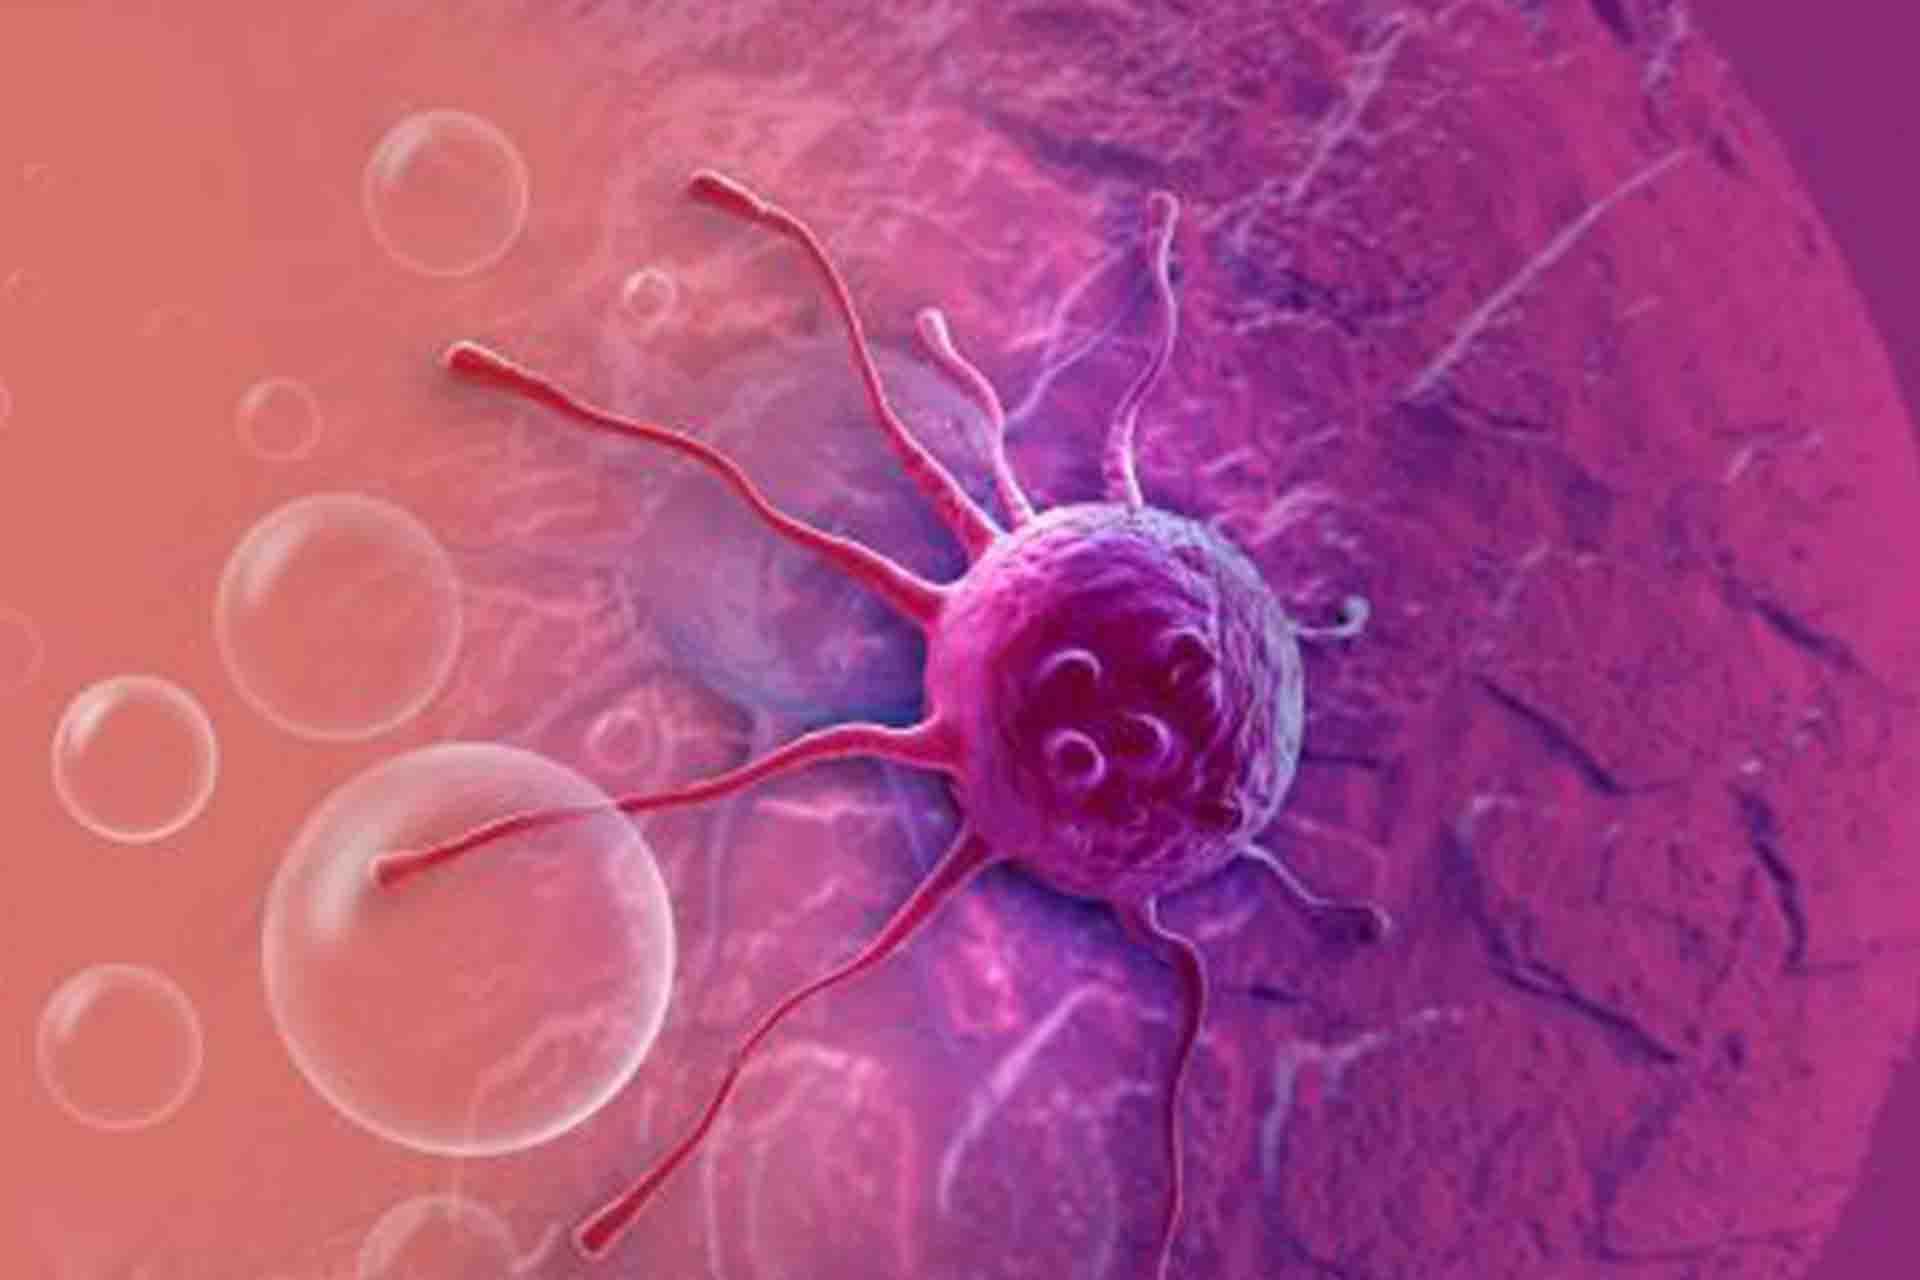 原创癌细胞寄生于人体生存,最终同归于尽,它图什么?